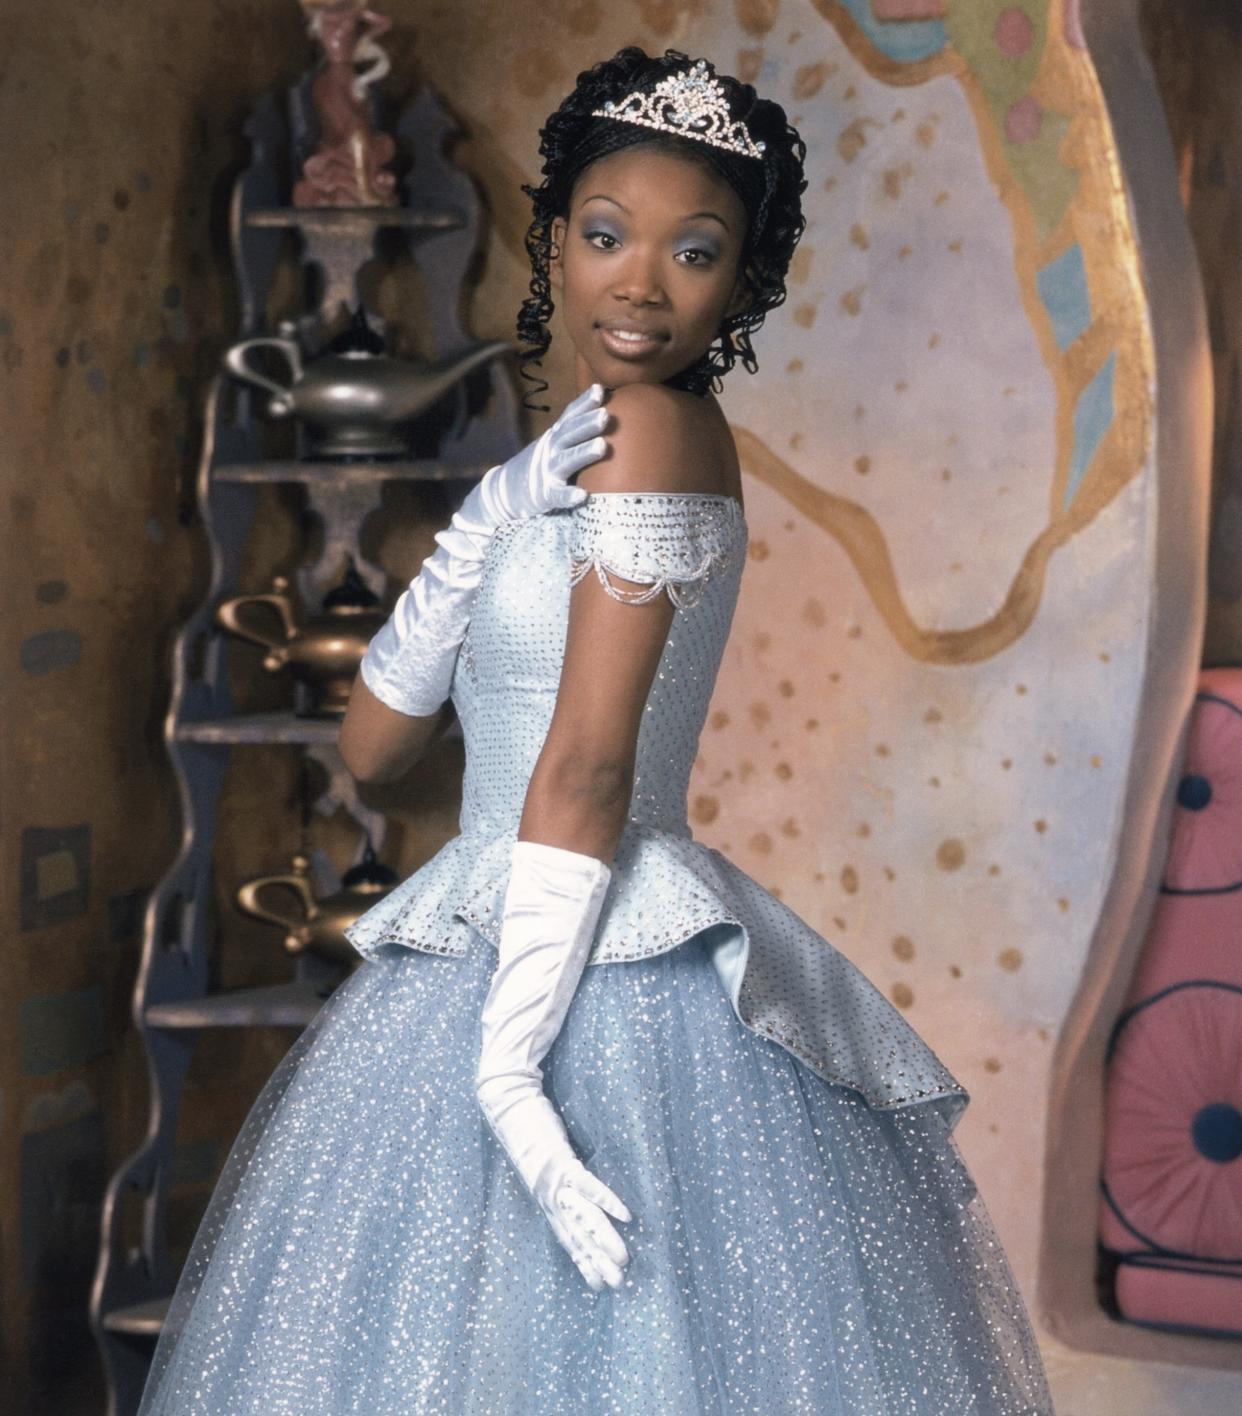 Brandy starred in Disney's 1997 TV movie version of 